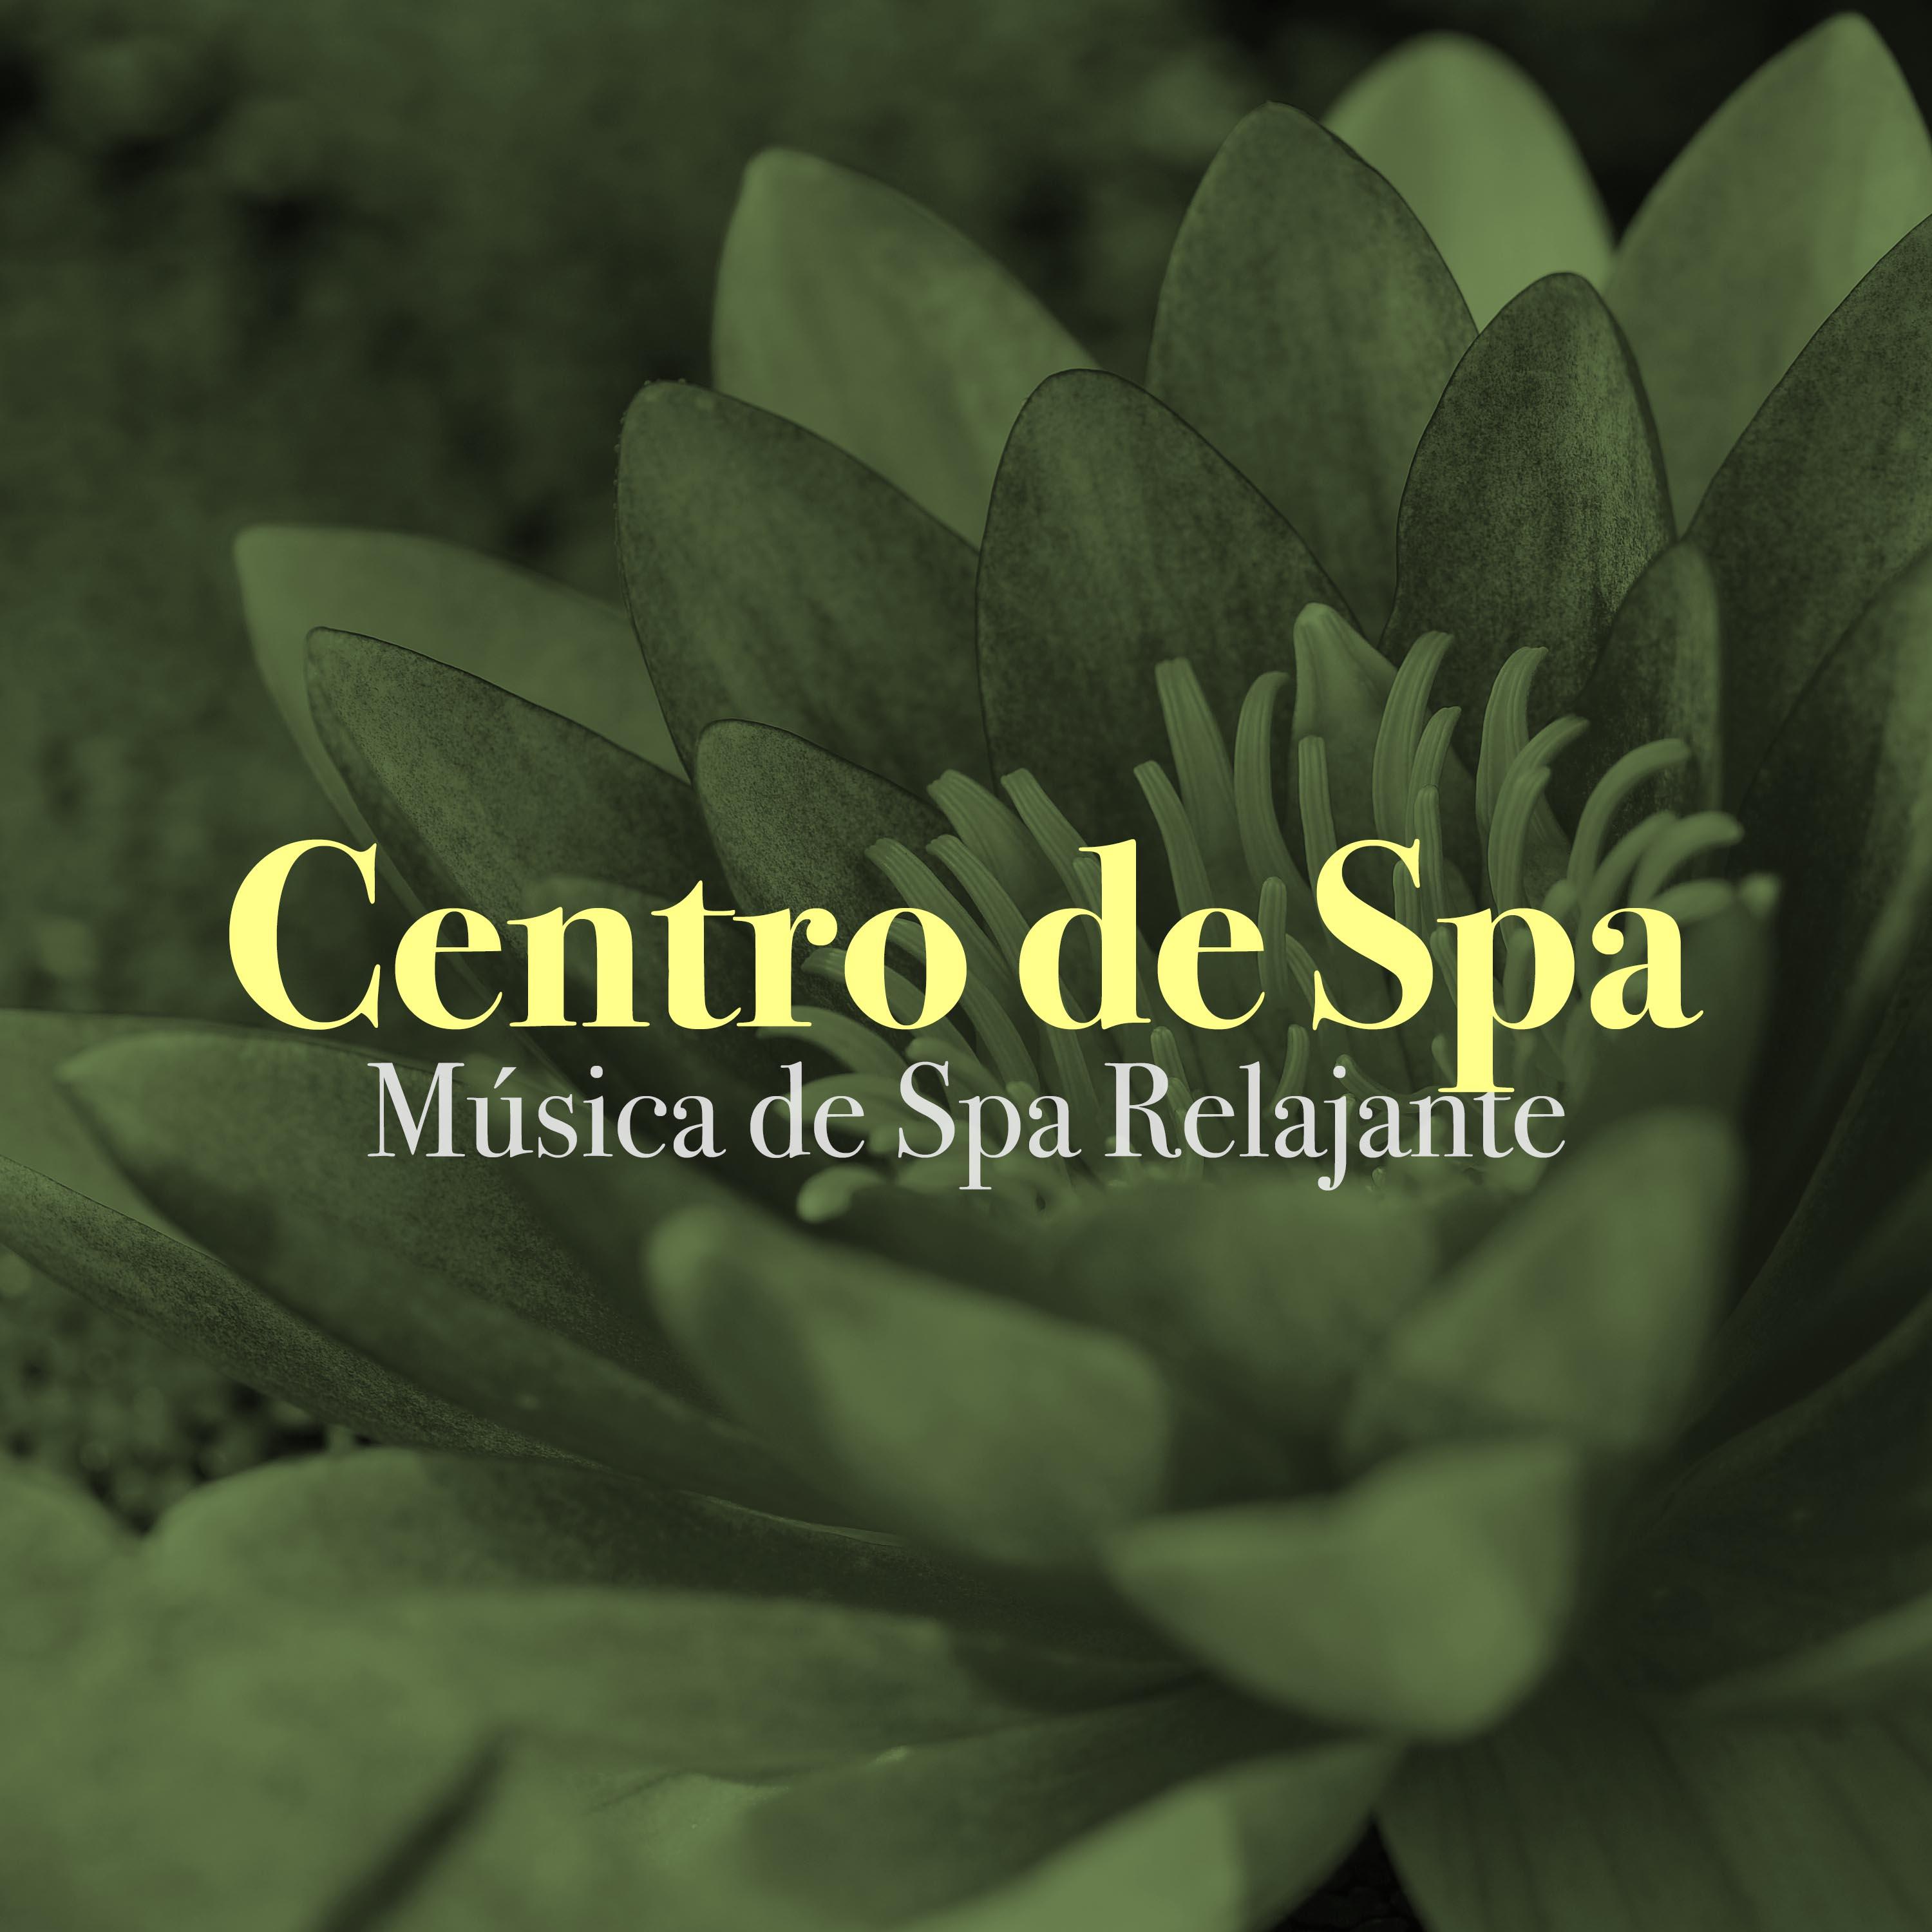 Centro de Spa: Música de Spa Relajante, Baños Termales, Masajes Thai